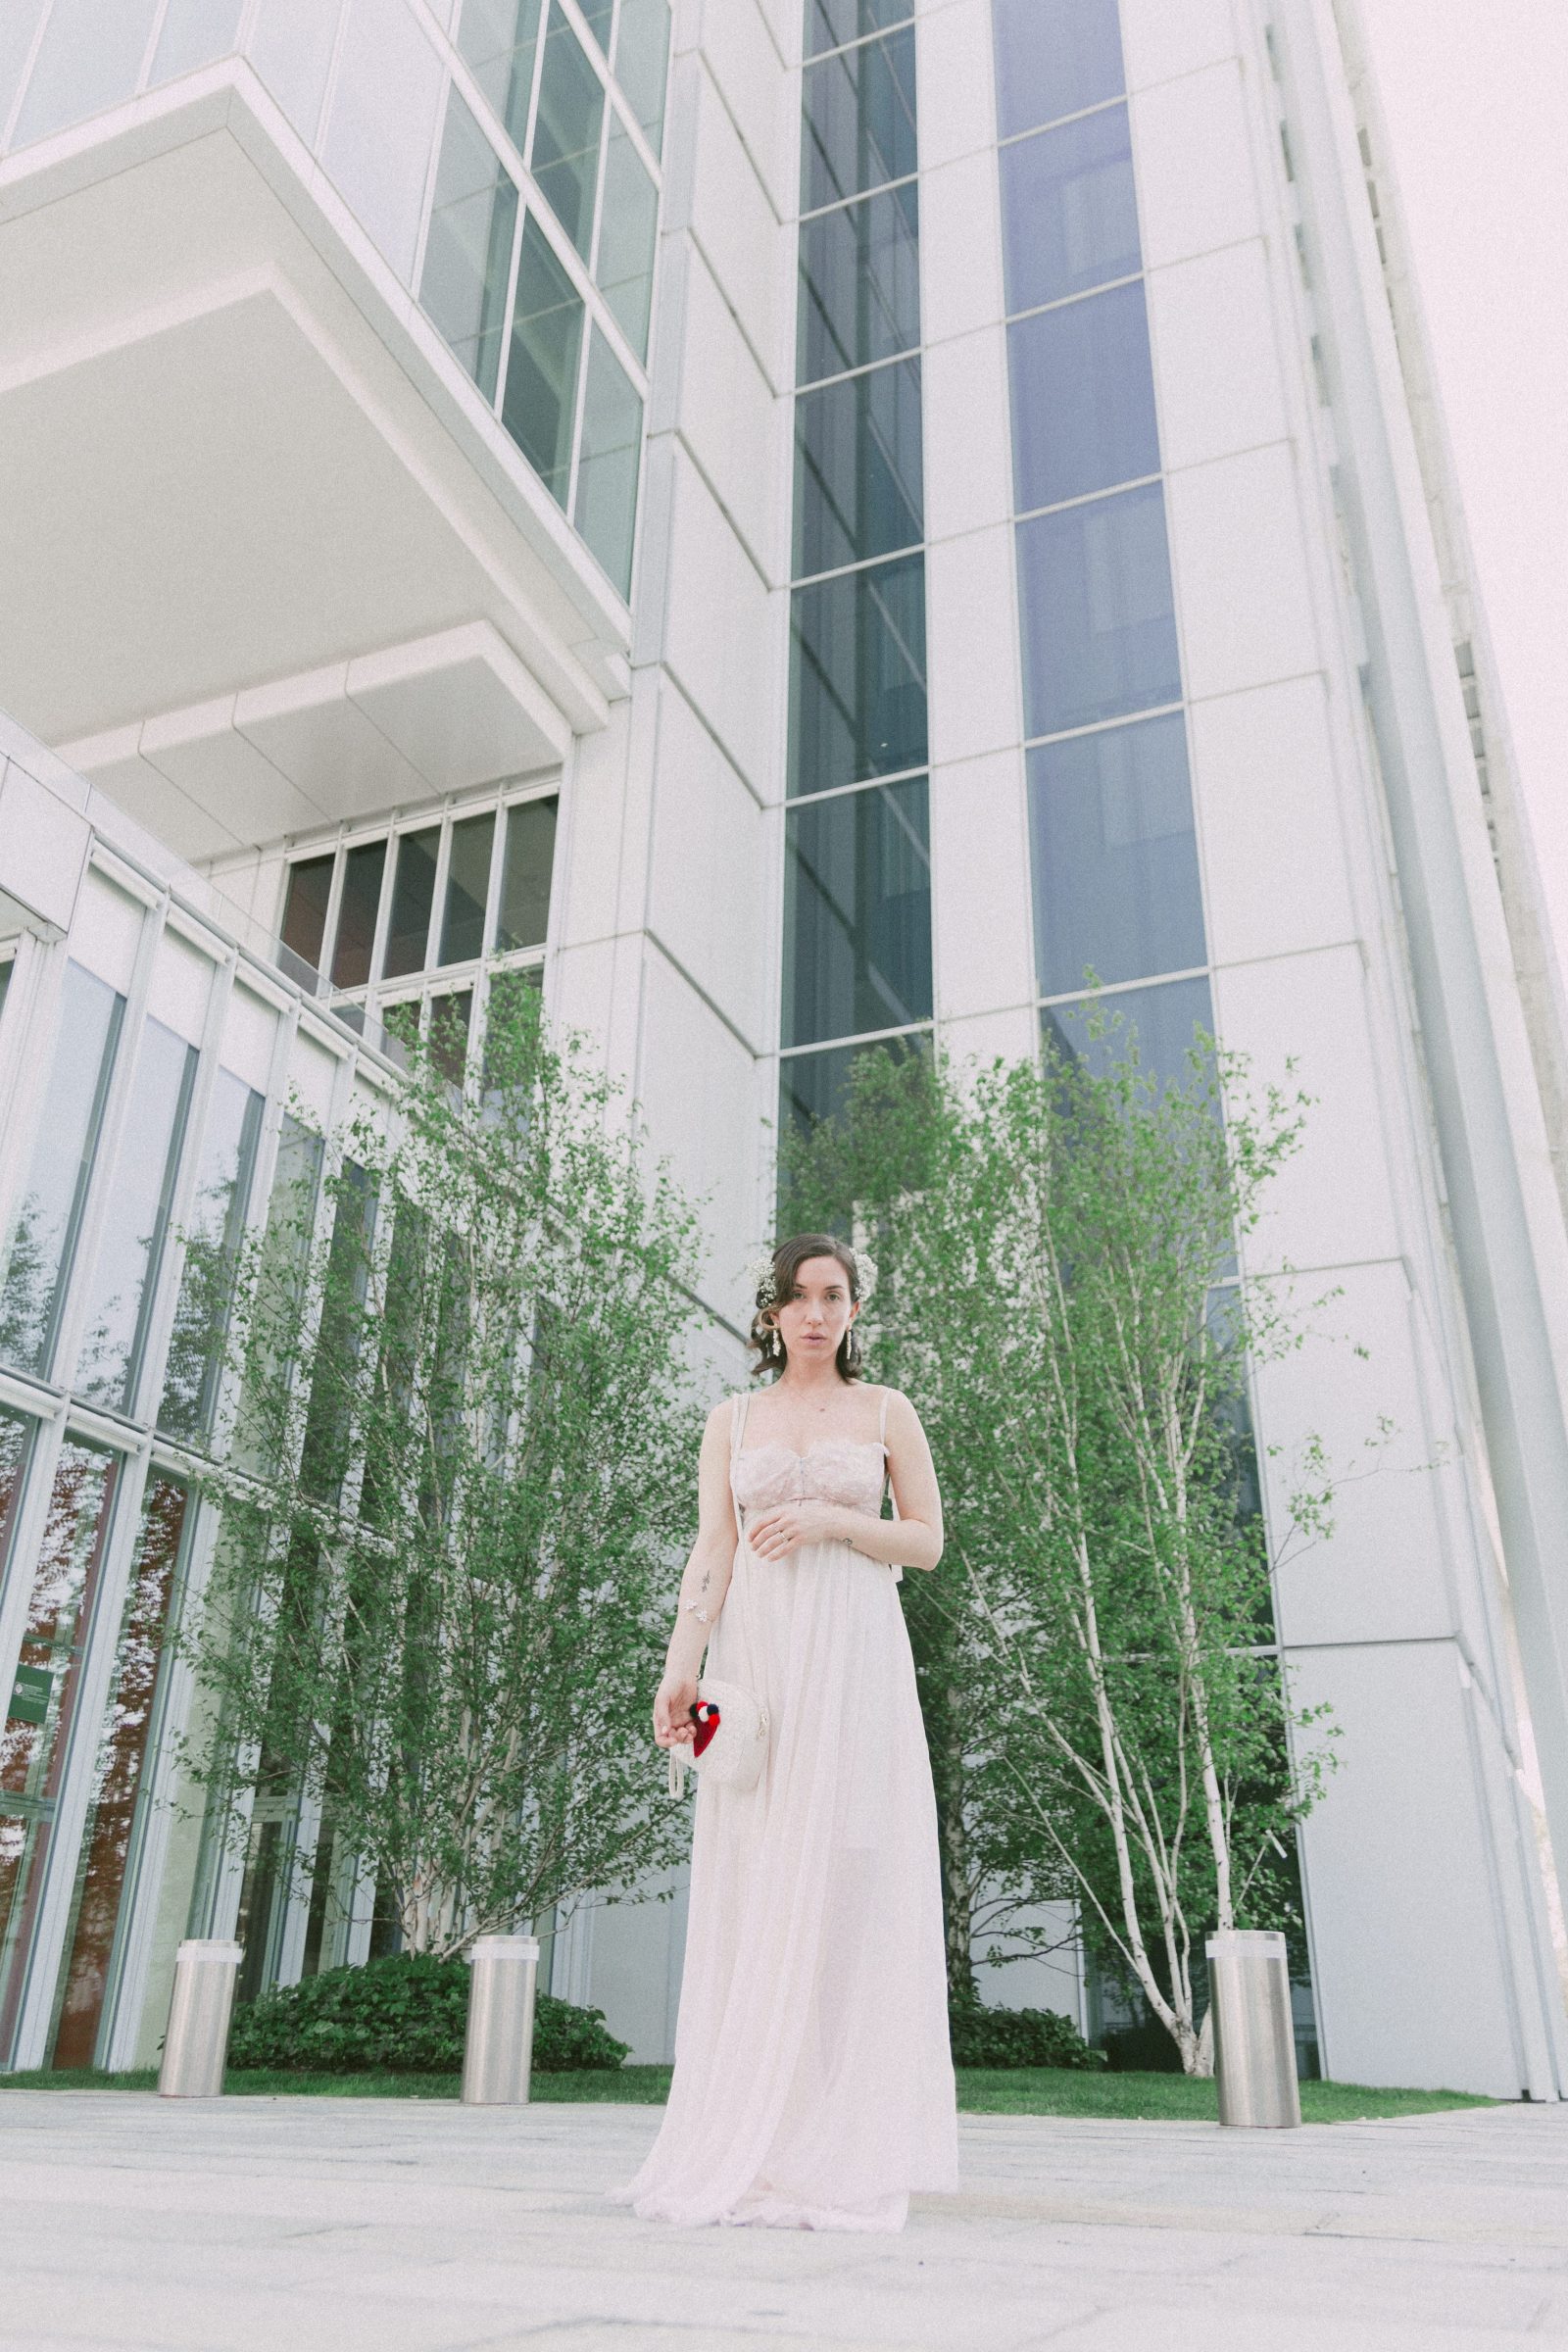 Summer 2018 | White dress